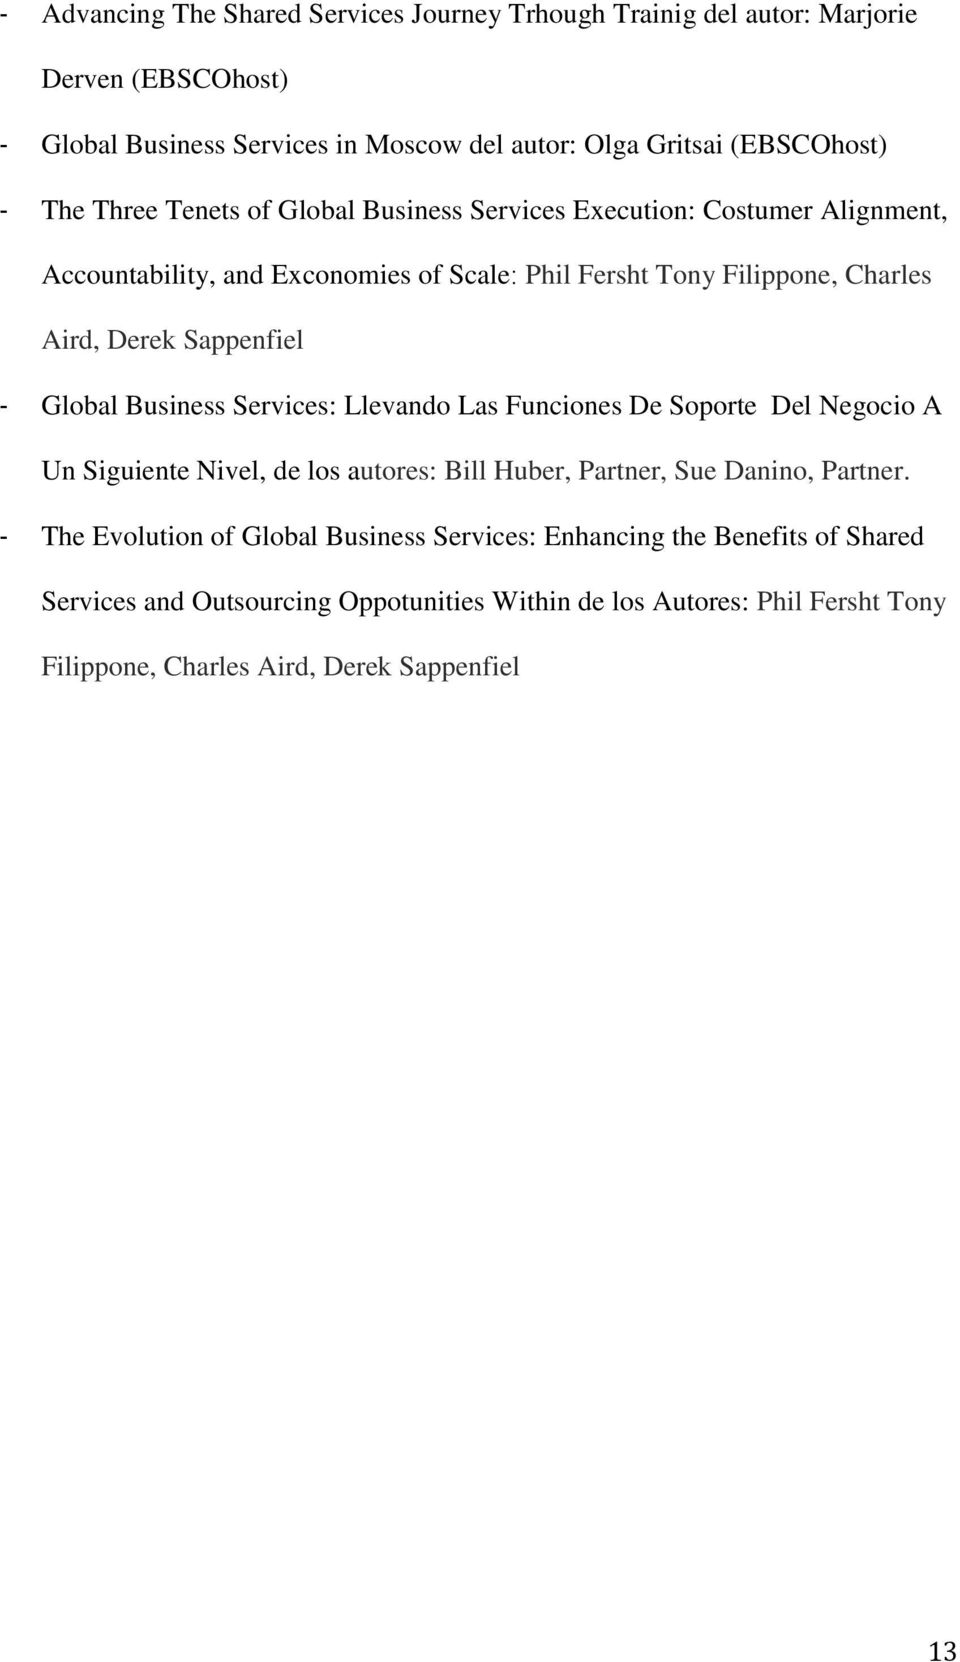 Global Business Services: Llevando Las Funciones De Soporte Del Negocio A Un Siguiente Nivel, de los autores: Bill Huber, Partner, Sue Danino, Partner.